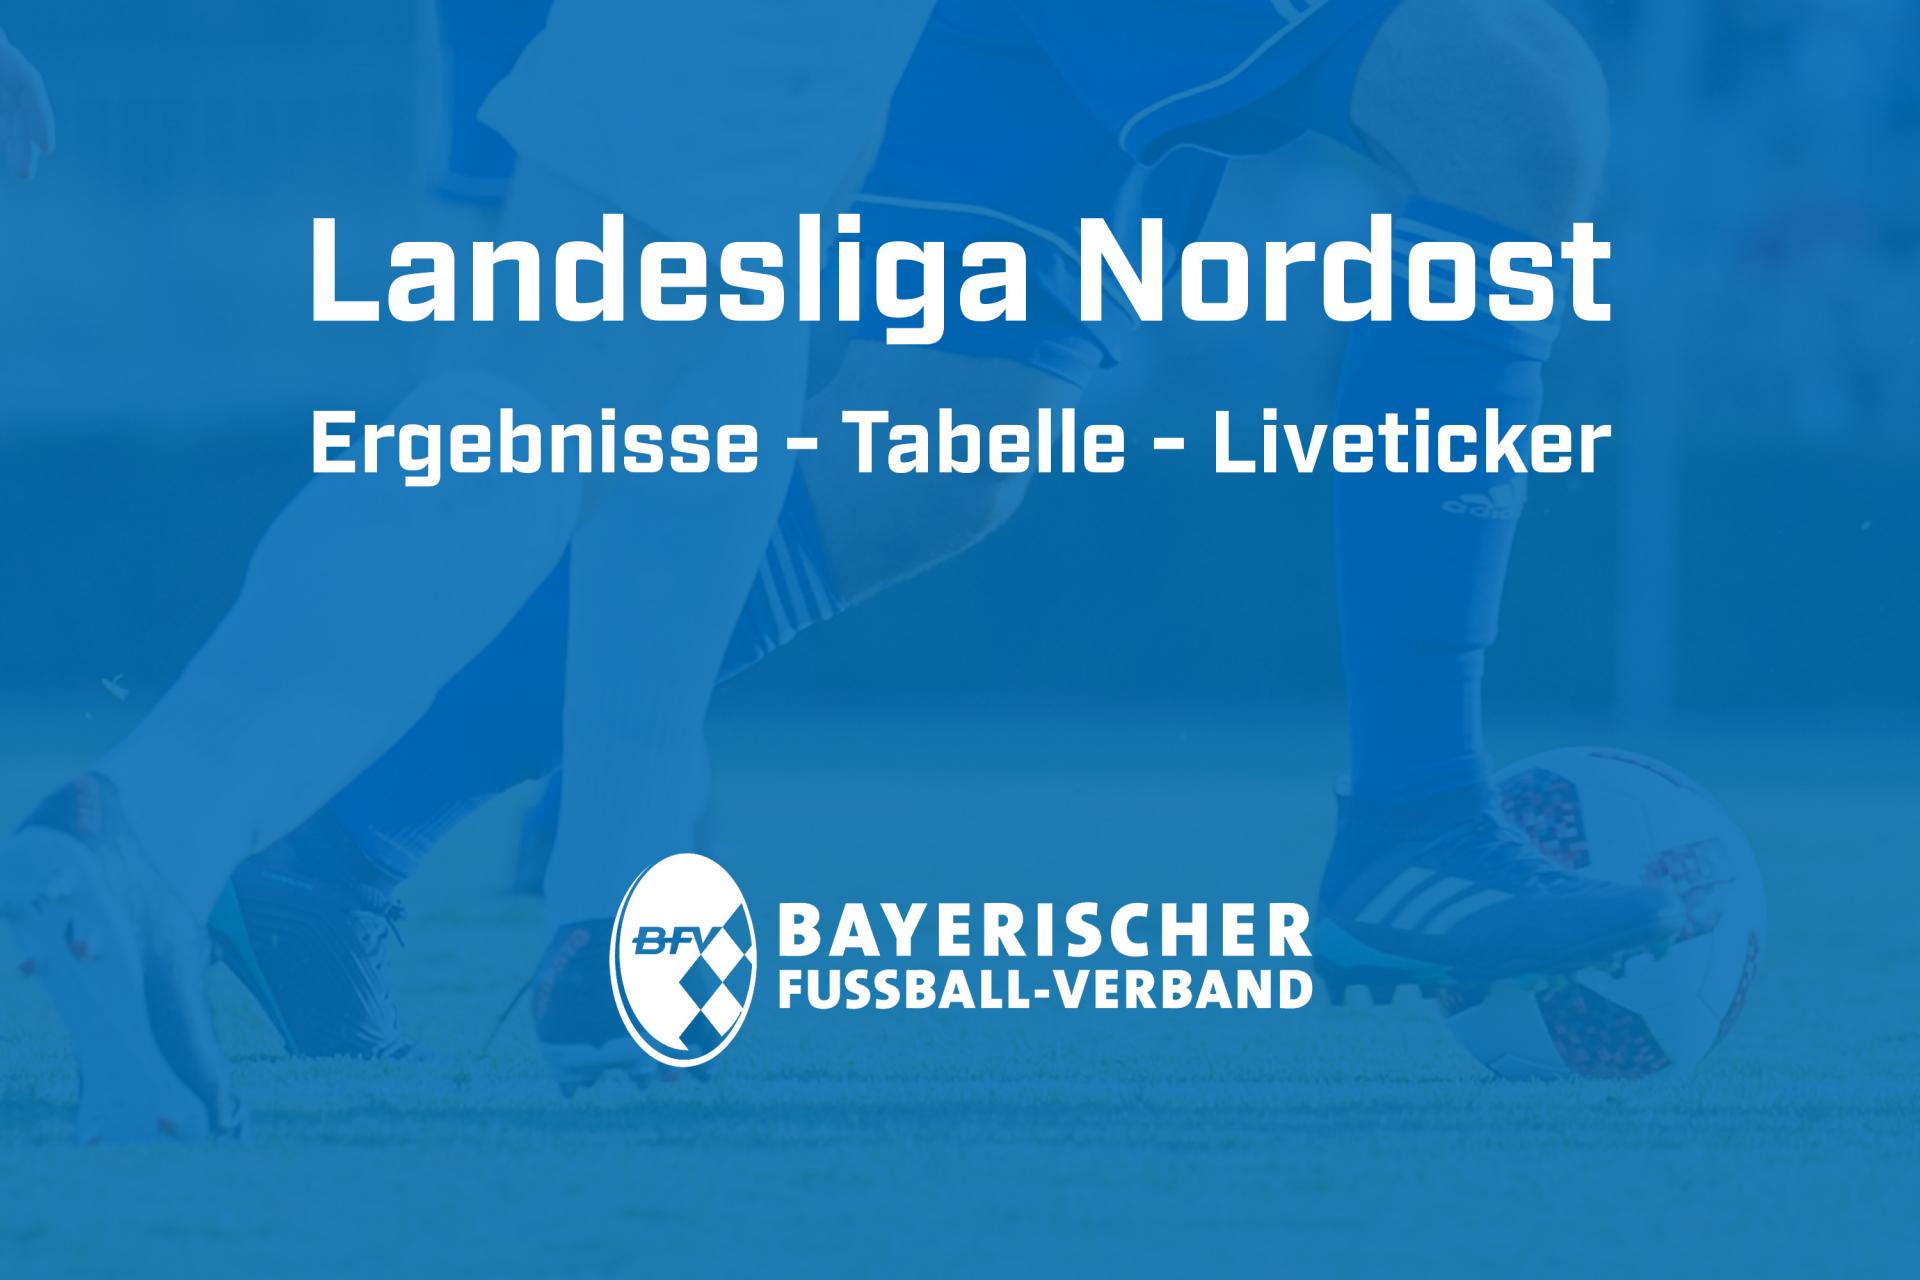 Landesliga Nordost